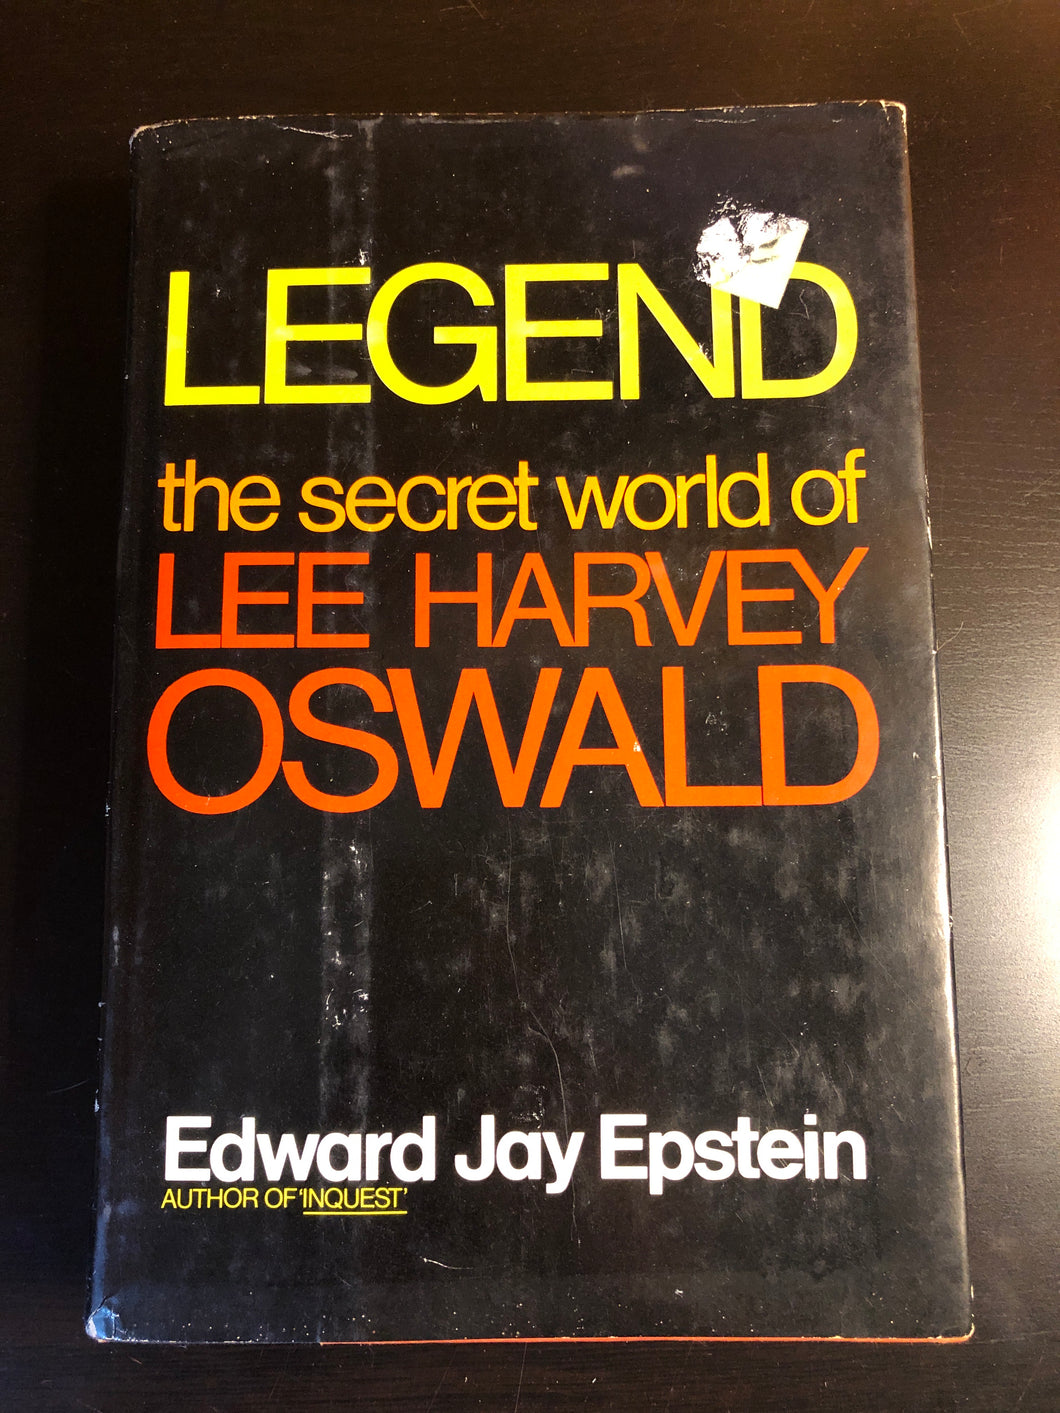 Legend: the secret world of Lee Harvey Oswald